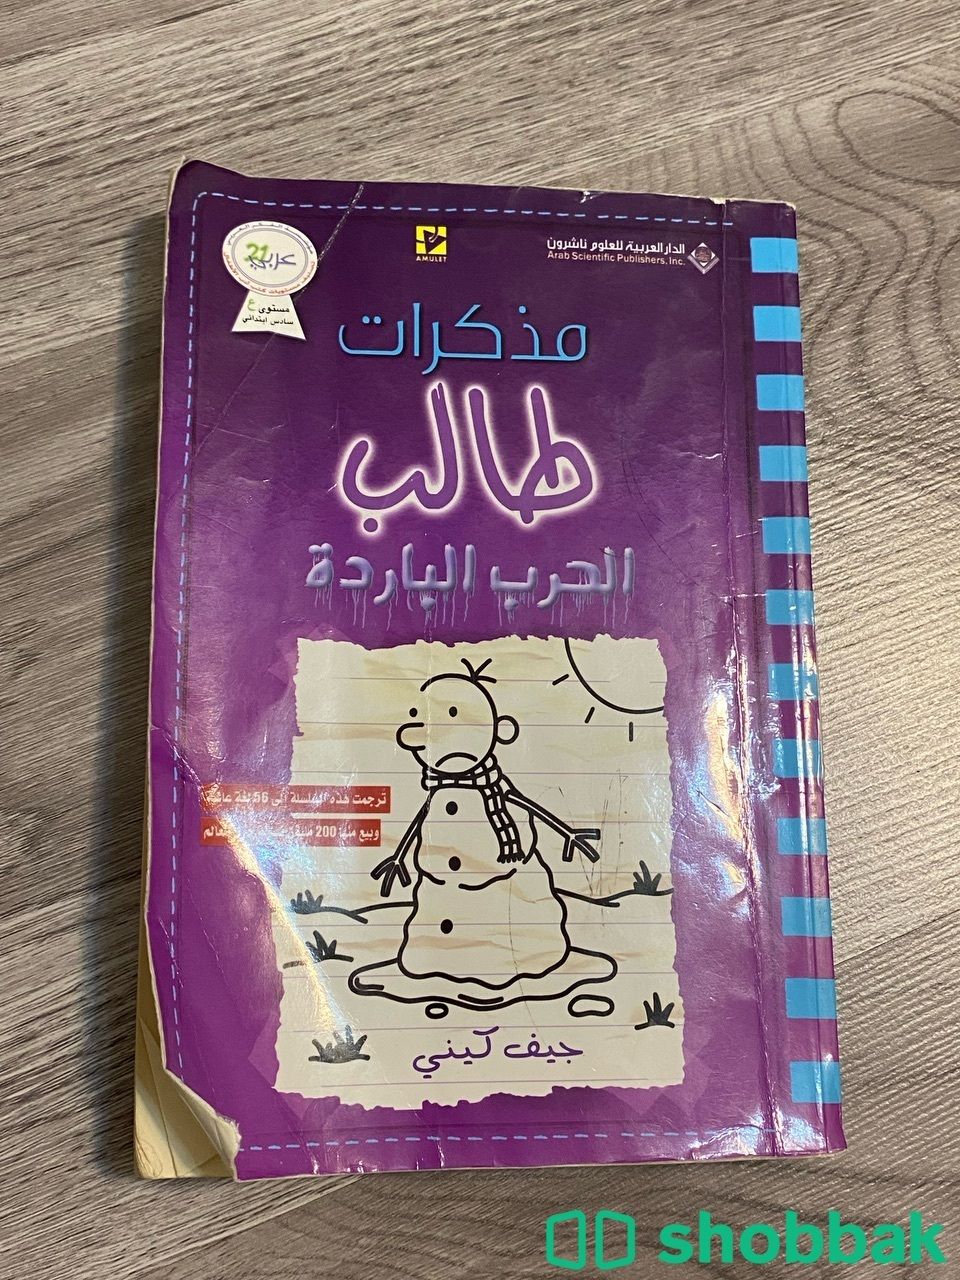 كتب ، روايات مستعمله Shobbak Saudi Arabia